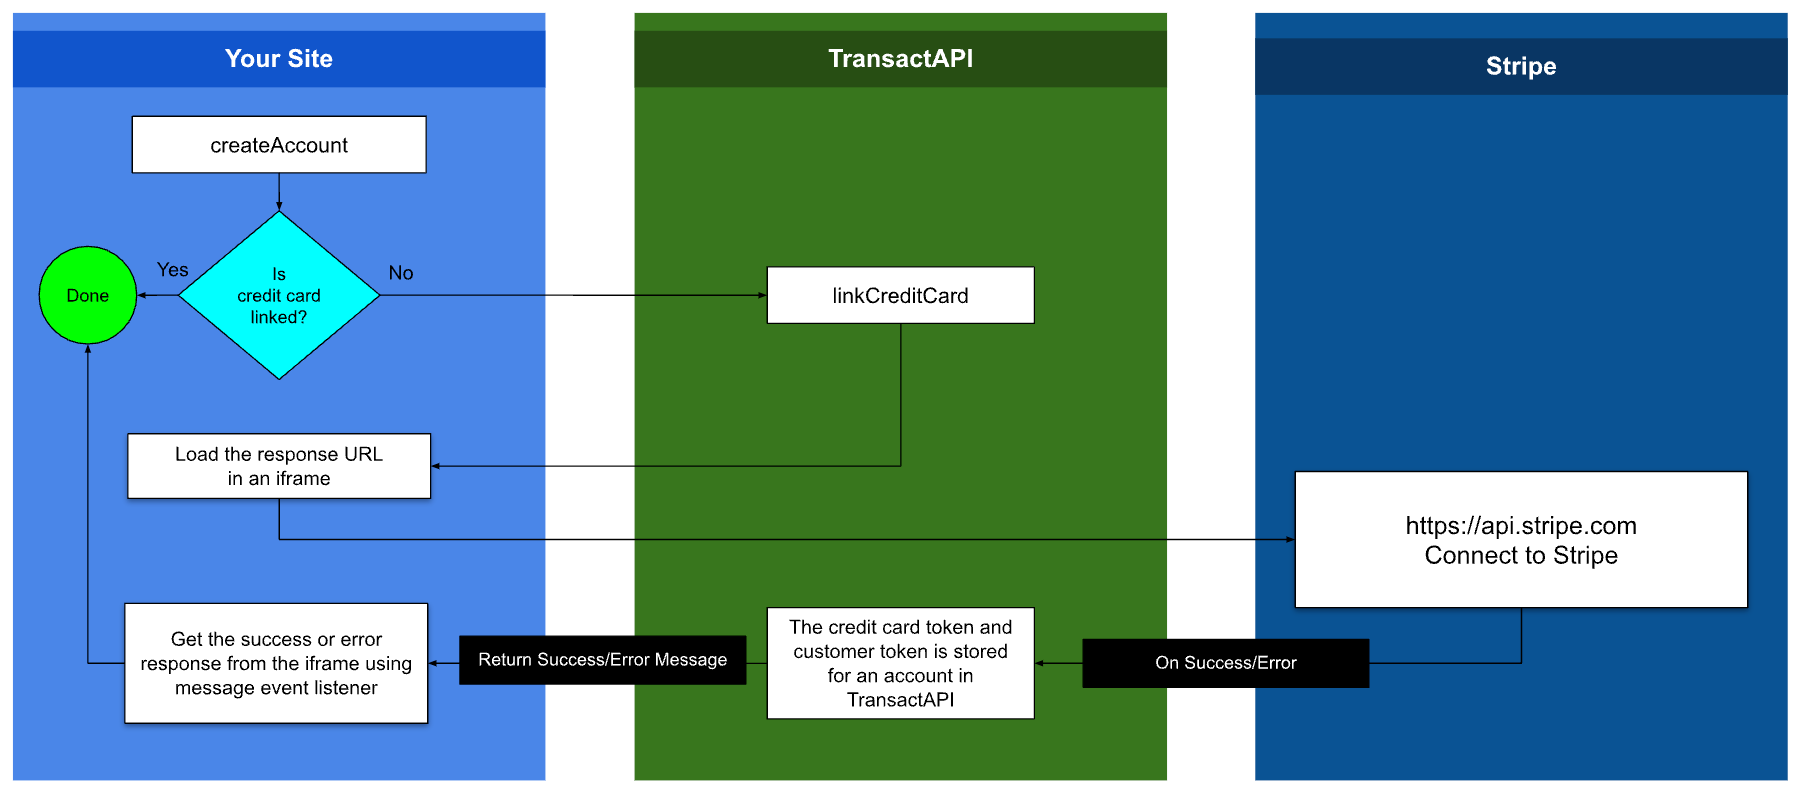 TransactAPI Stripe Workflow